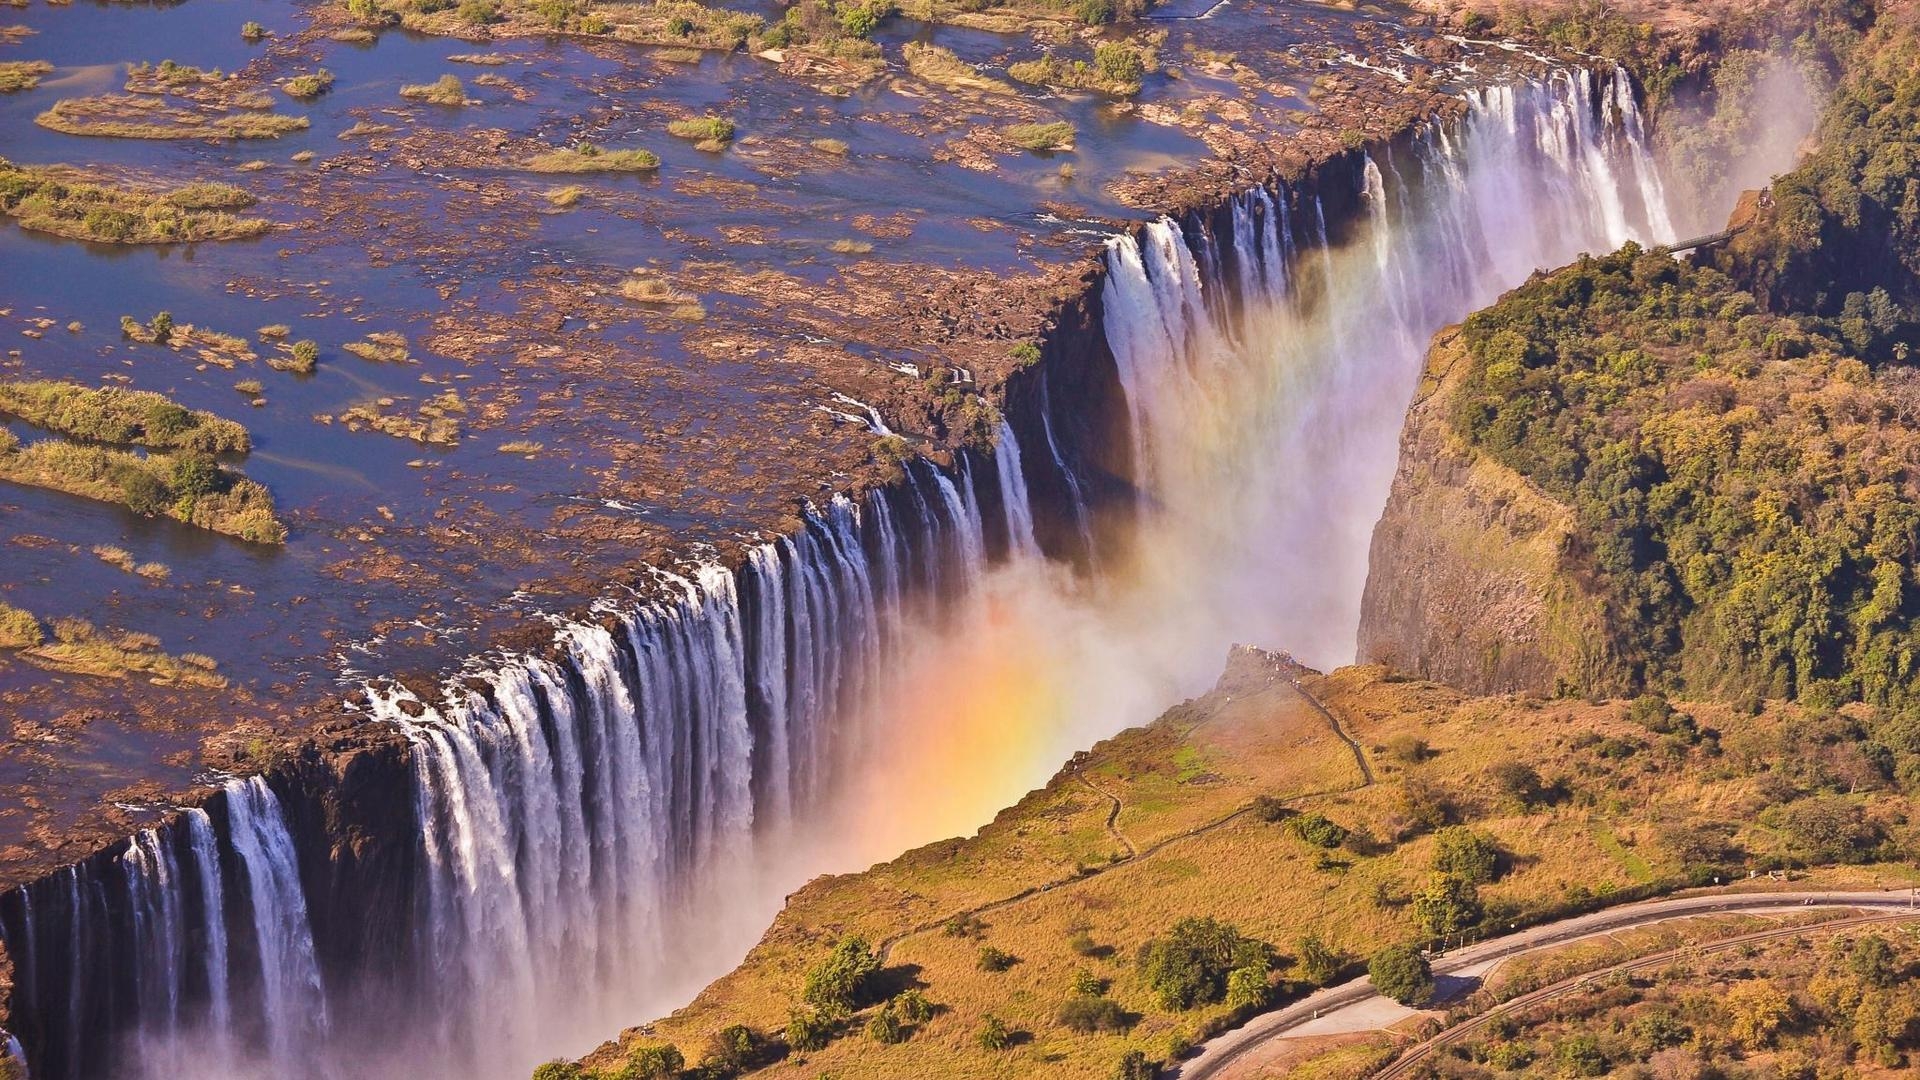 Victoria Falls Zambia for 1920 x 1080 HDTV 1080p resolution